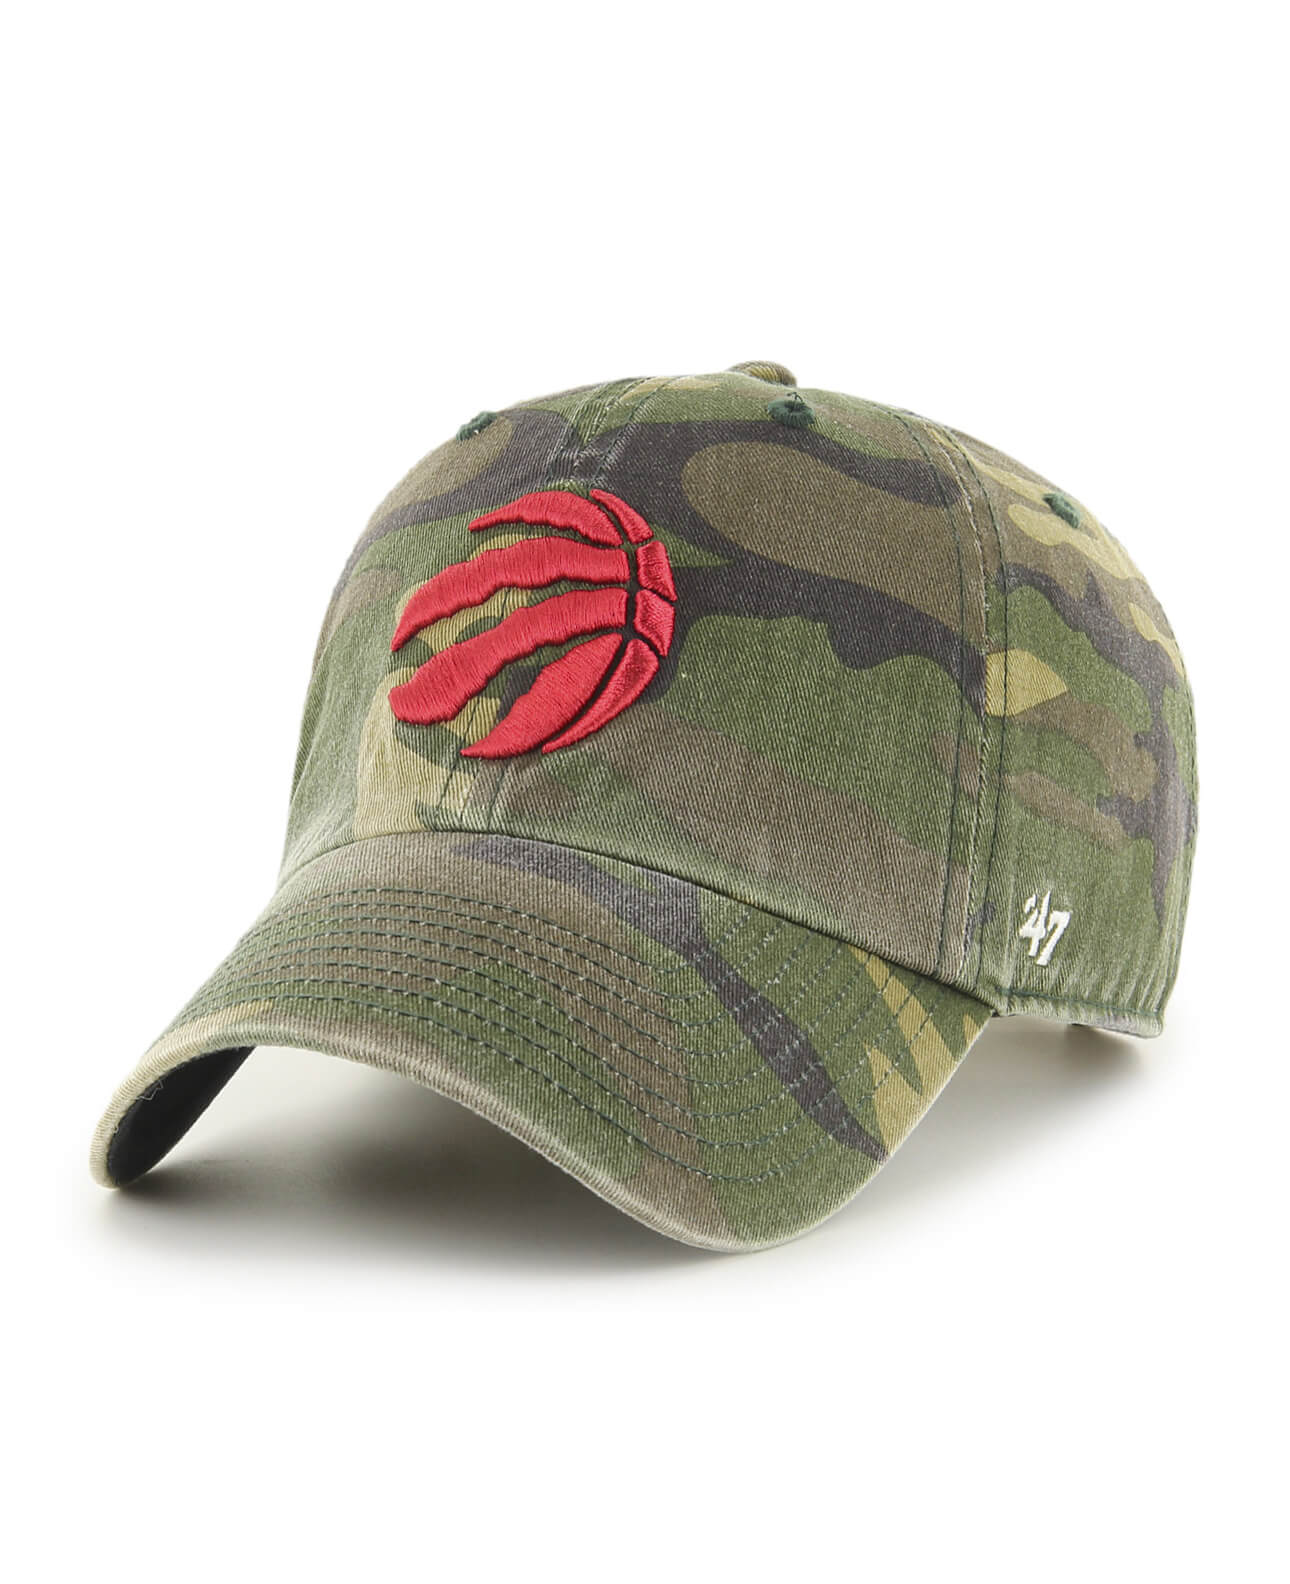 Men's NBA Toronto Raptors '47 Brand Camo Clean Up Hat - Adjustable